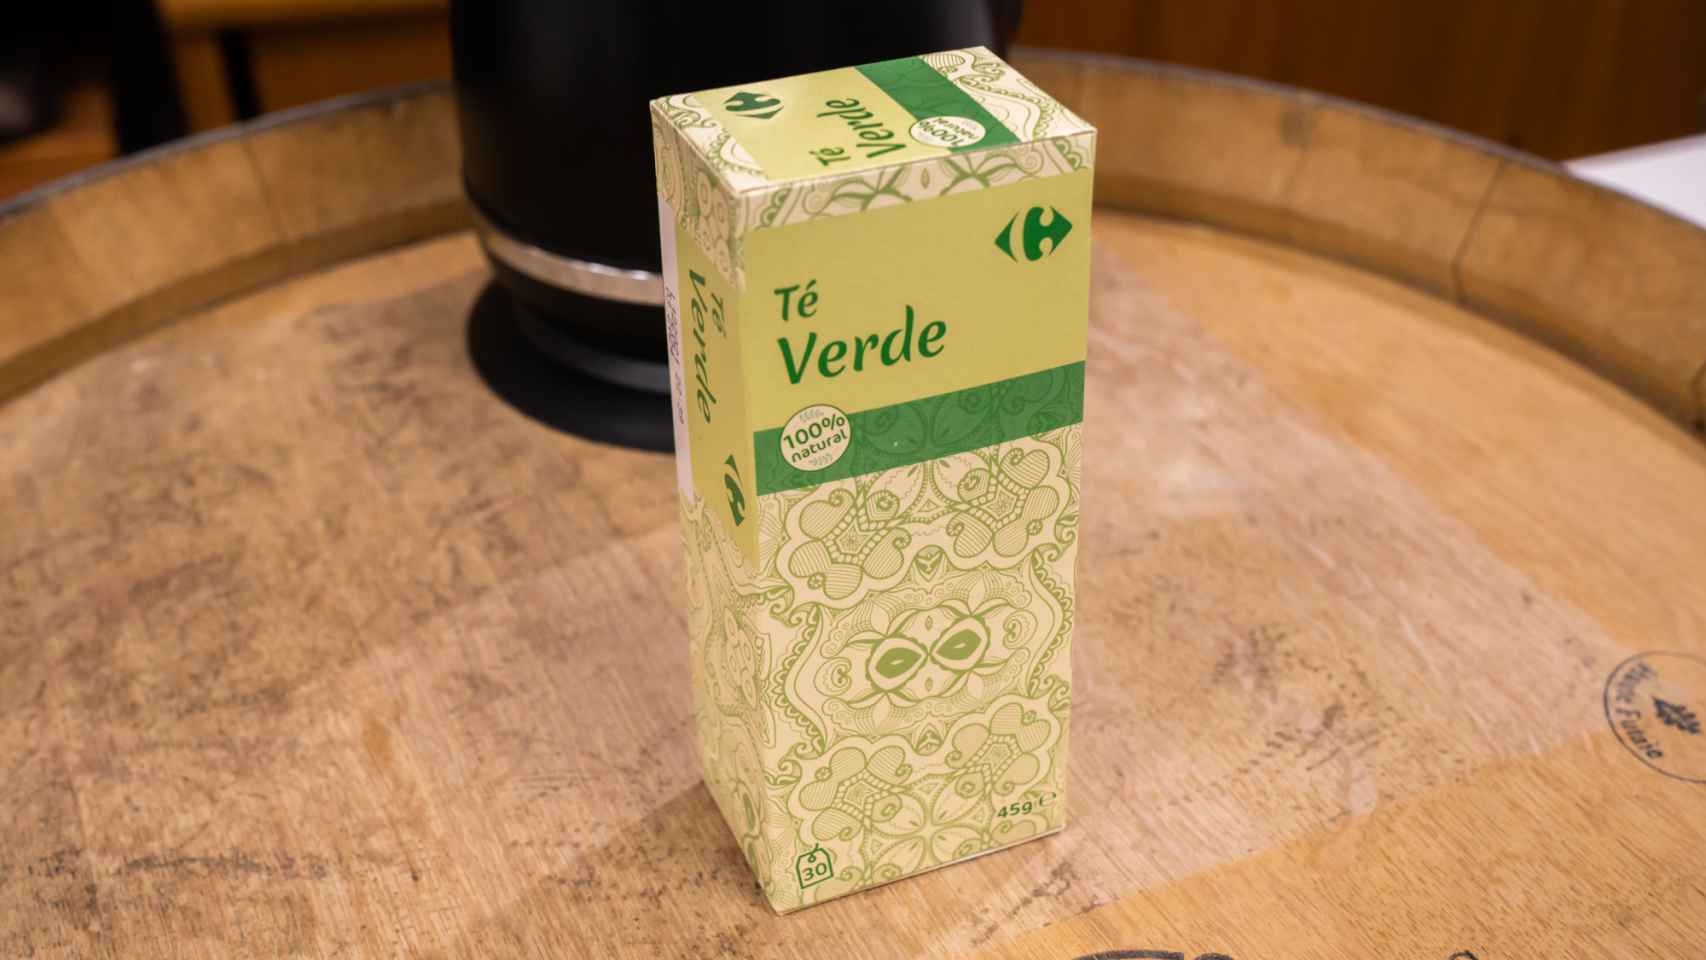 La caja de té verde de Carrefour.